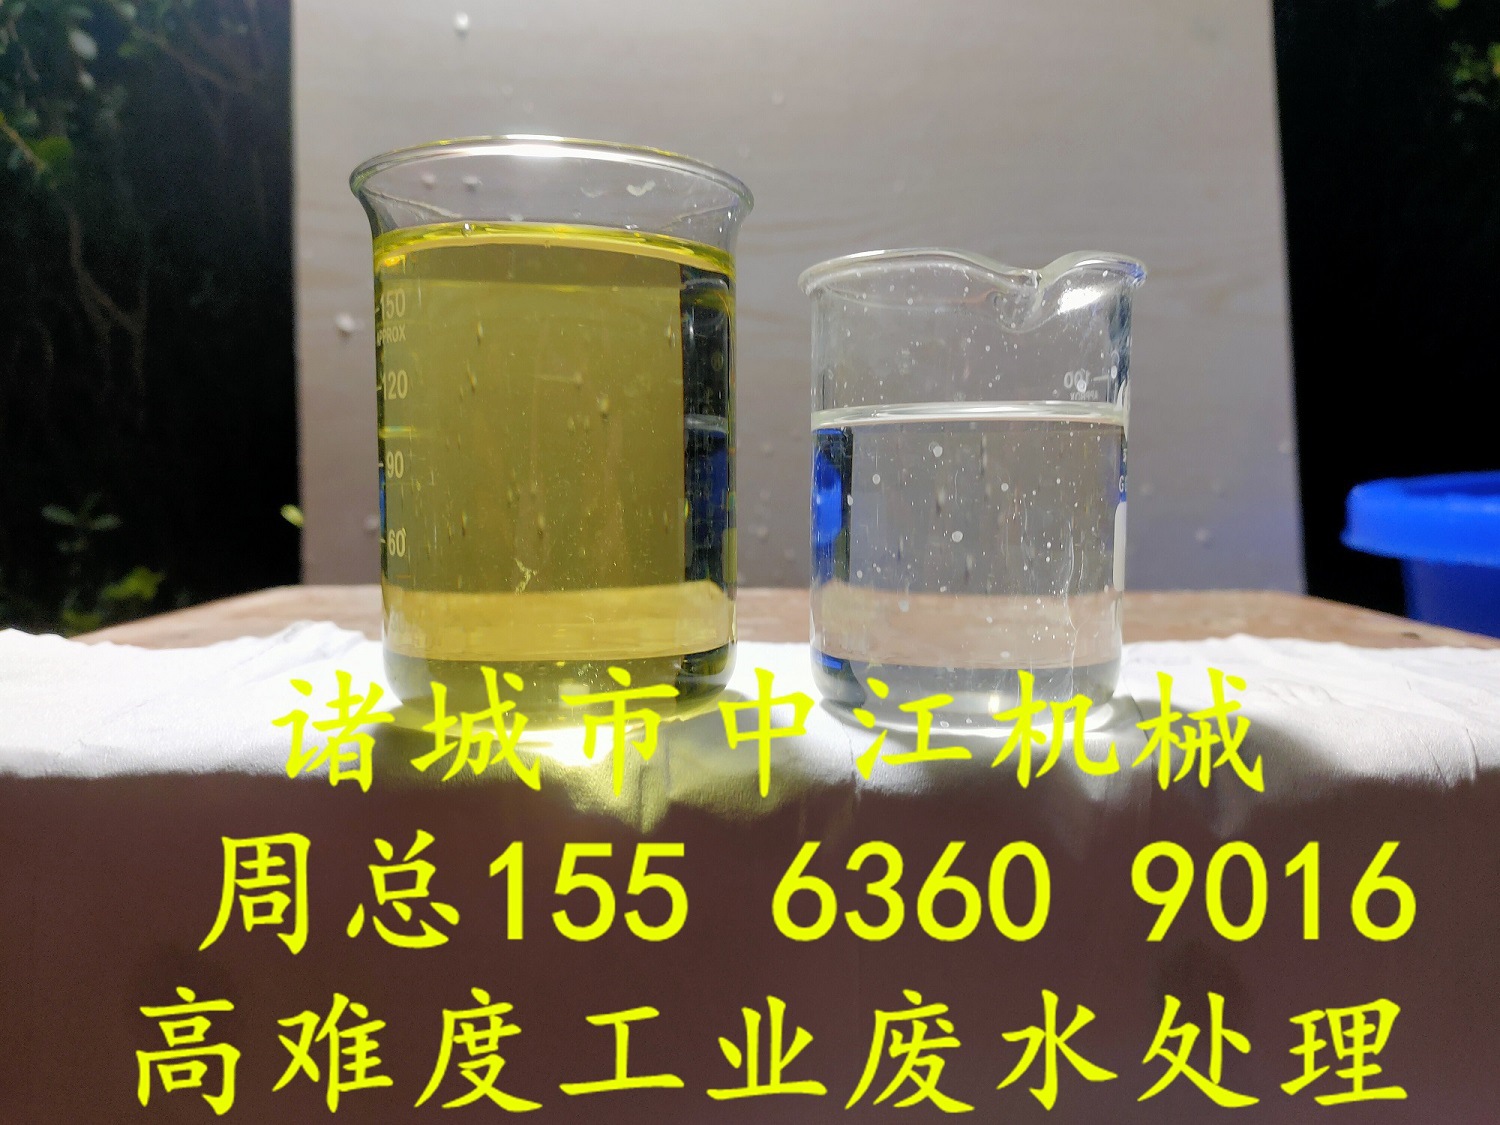 油脂提纯废水电化学实验1小时对比图22